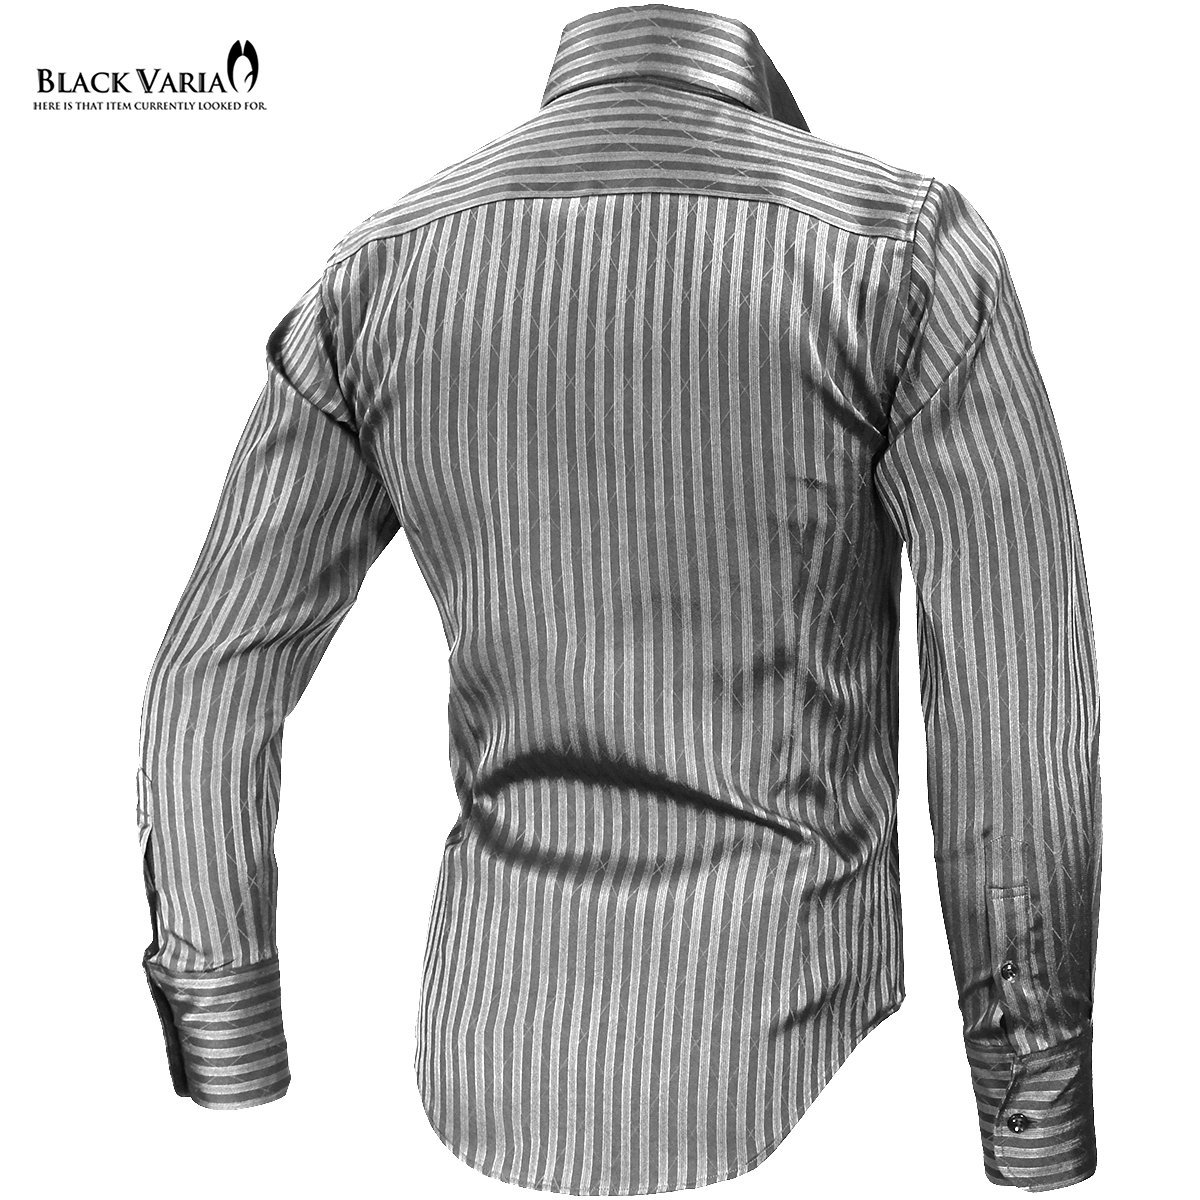 191852-gyS BLACK VARIA ストライプ織柄 スキッパー スワロフスキー ドレスシャツ スリム メンズ(ブラックダイヤ釦 グレー灰シルバー銀) M_ブラックダイヤ釦